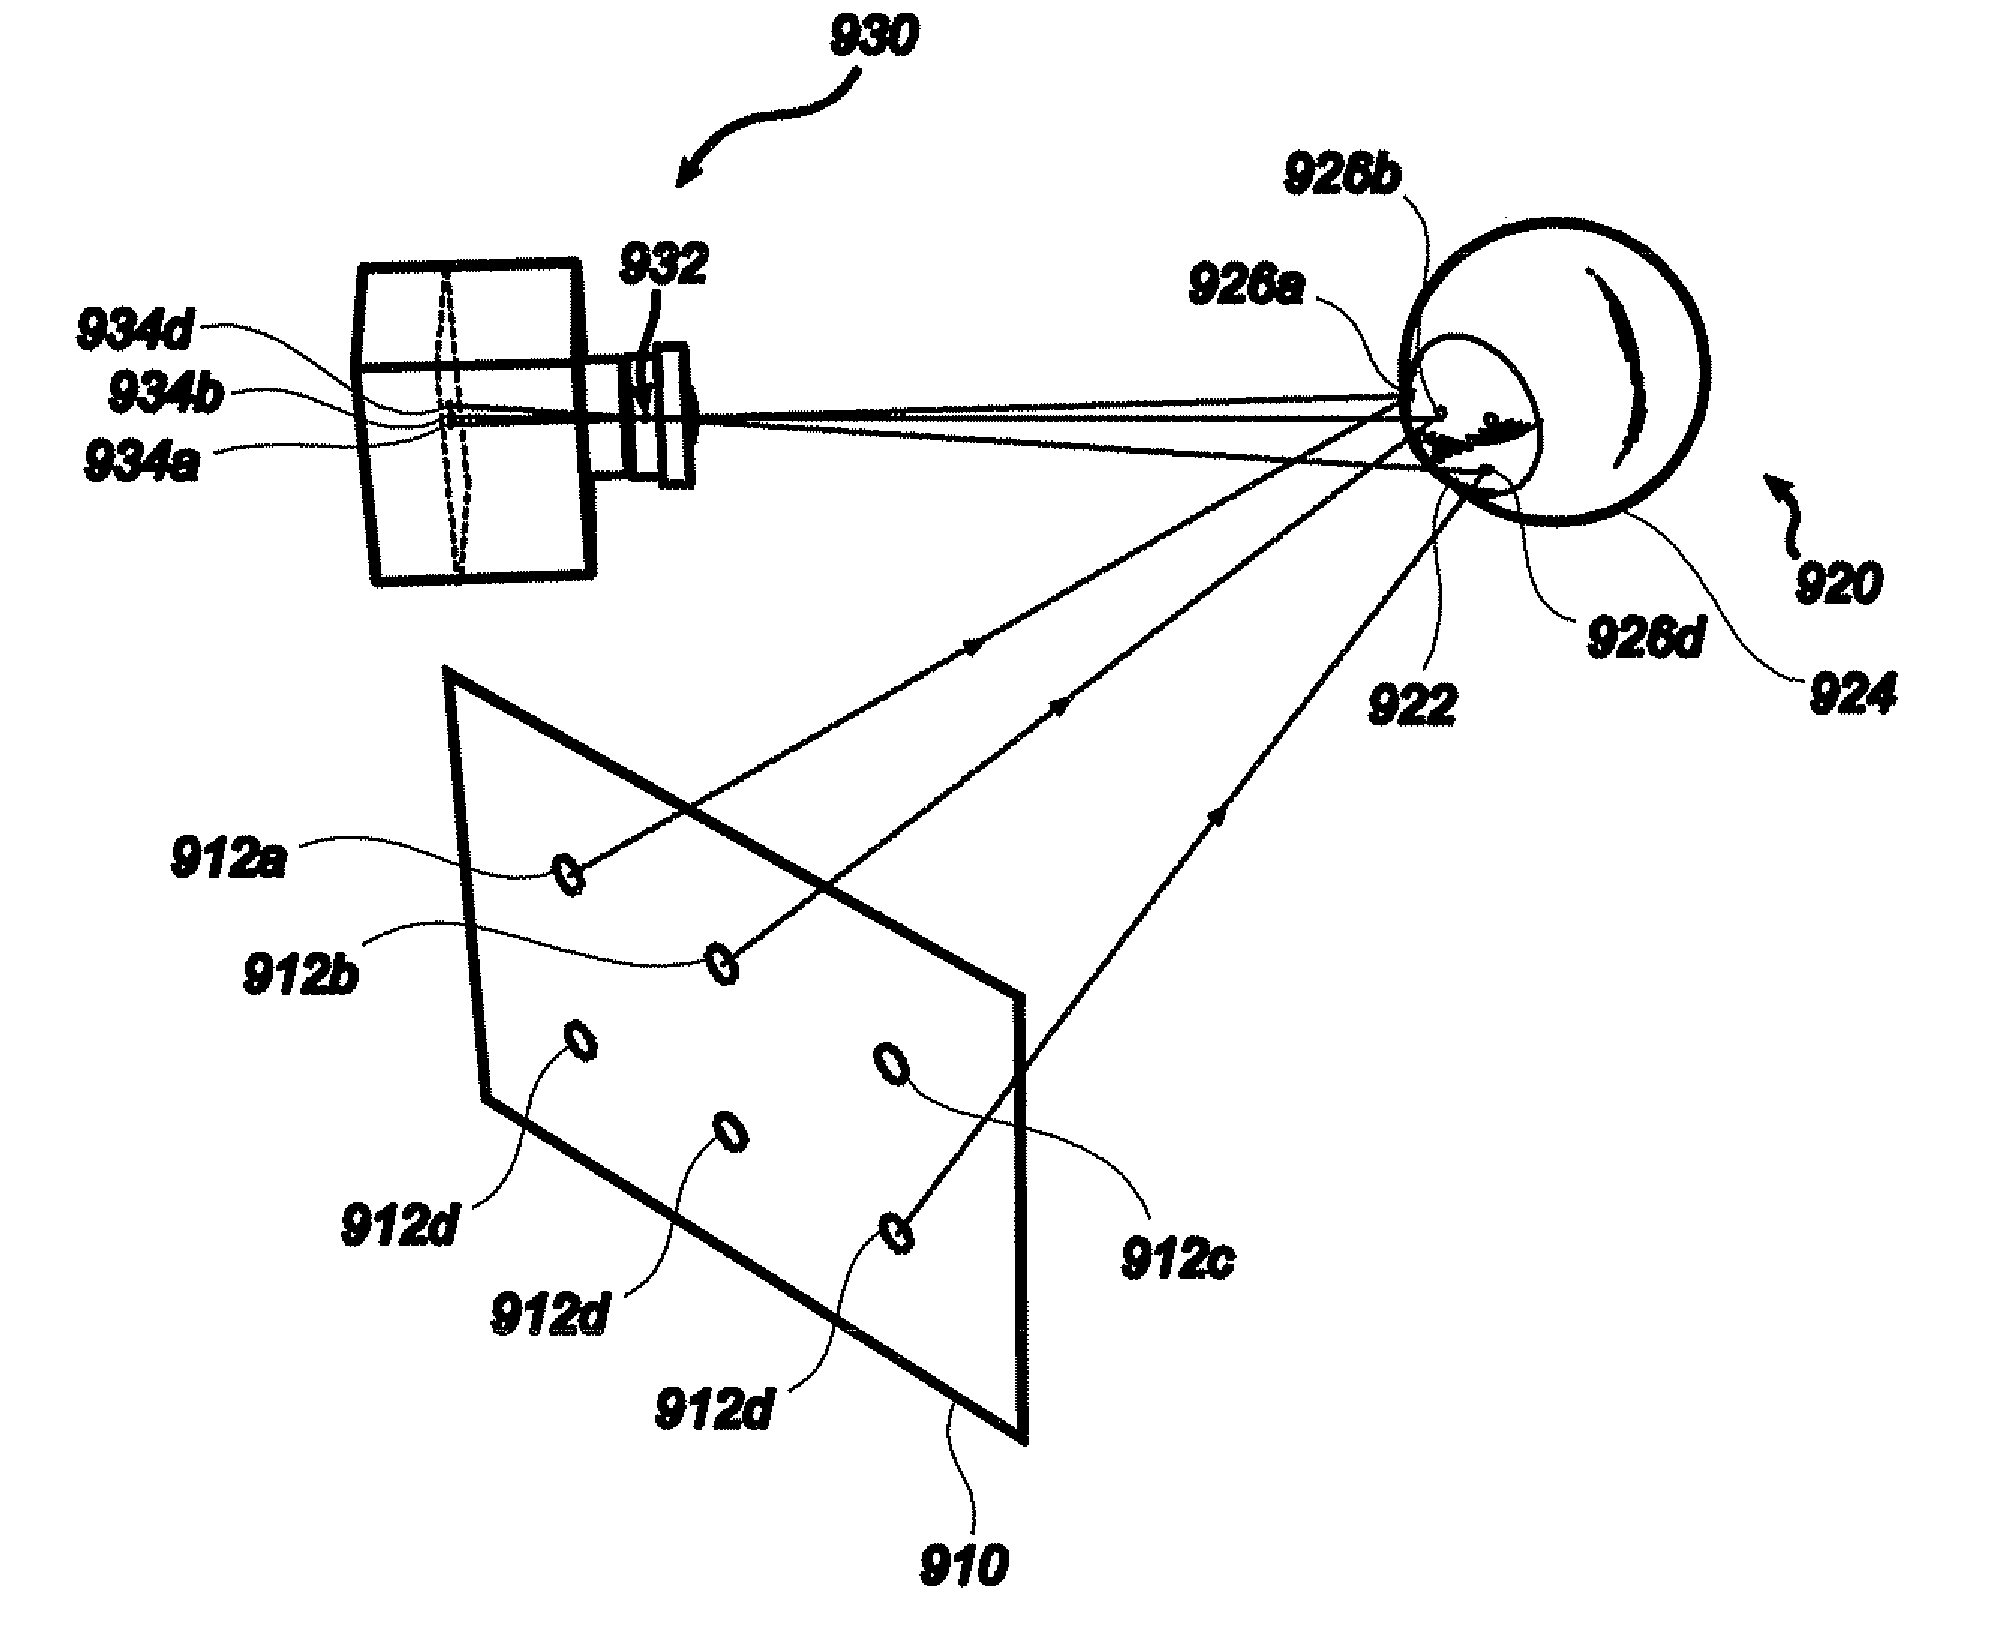 Adaptive camera and illuminator eyetracker